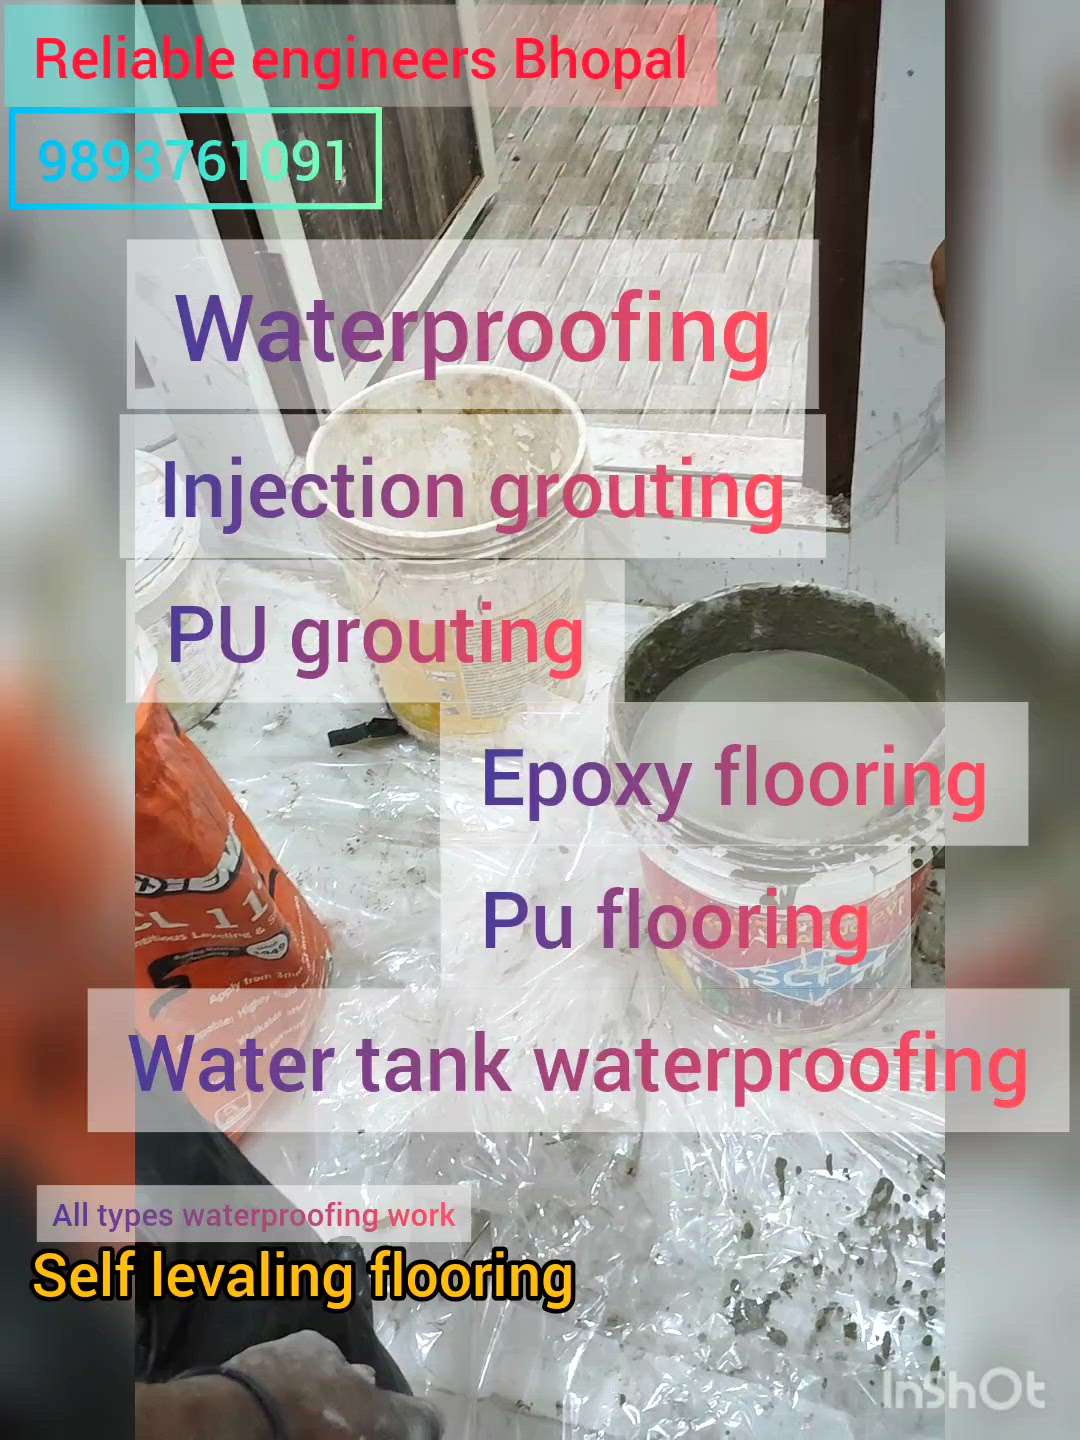 self levaling flooring विनाइल फ्लोरिंग और वुडएन फ्लोरिंग के पहले कराये सेल्फ लेवेलिंग   #selflevelling  #vinayal #FlooringTiles  #WoodenFlooring  #epoxyfloring  #VinylFlooring  #WaterProofings  #WaterProofing  #WaterProofing  #hospitalvinylflooring  #industrialproject  #hotelinteriordesign  #bhopalduplex  #bhopalproperty  #bhopalcommercial  #bhopalconstruction  #WallPutty  #LivingRoomPainting  #exteriordesing  #CivilEngineer  #Architect  #architecturedesigns  #mykarment  #myk  #WaterProofing  #FlooringServices  #HouseRenovation  #WallPainting  #InjectionGrouting  #grouting  #pugrouting  #epoxycoating  #hospitalfloor  #hospitalpanting